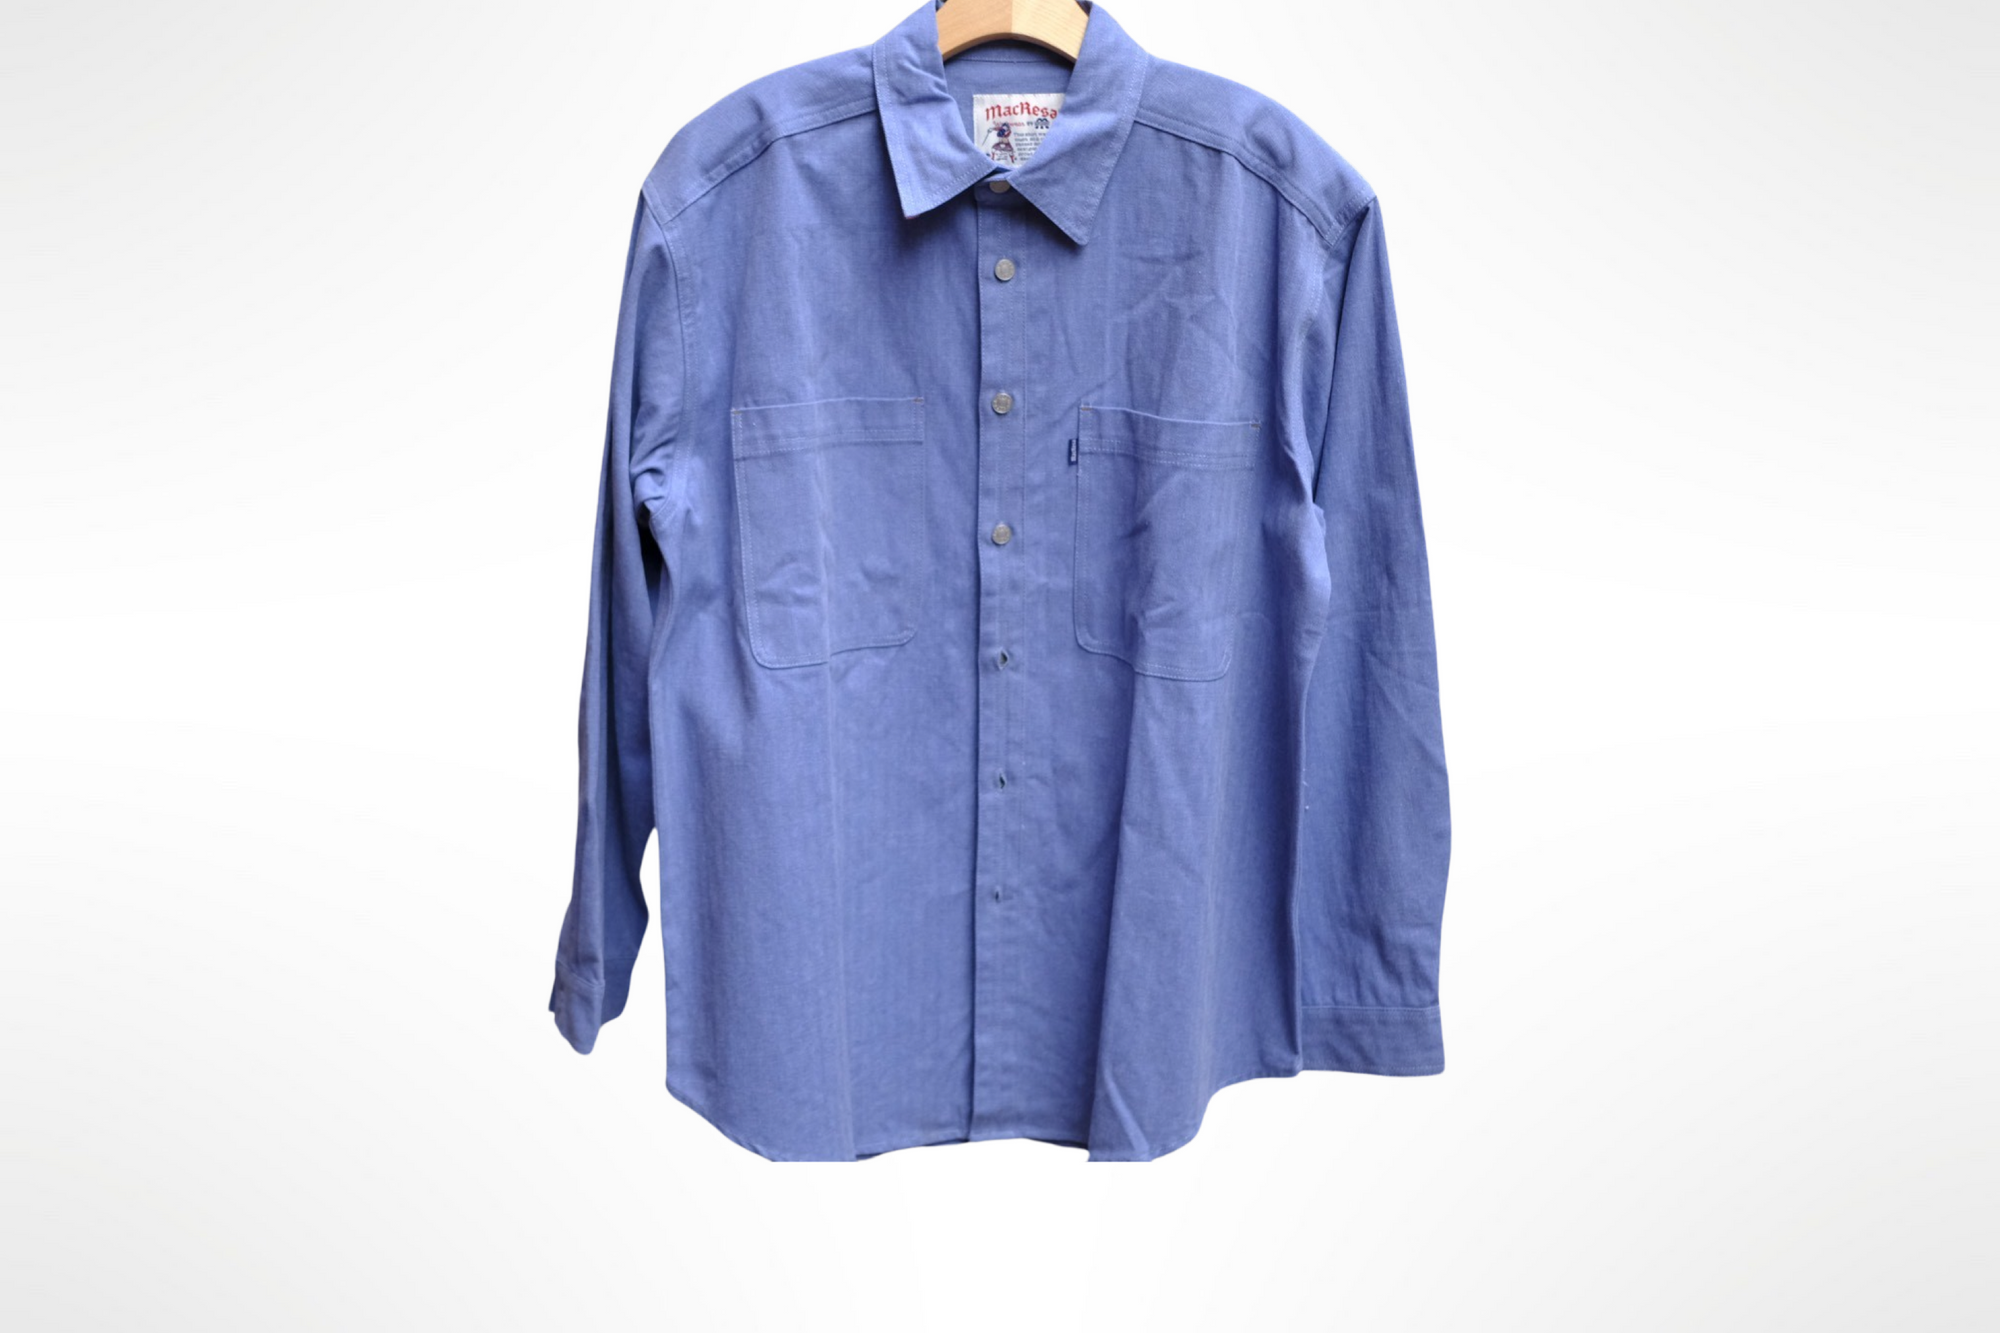 mac shirt in vintage blue herringbone